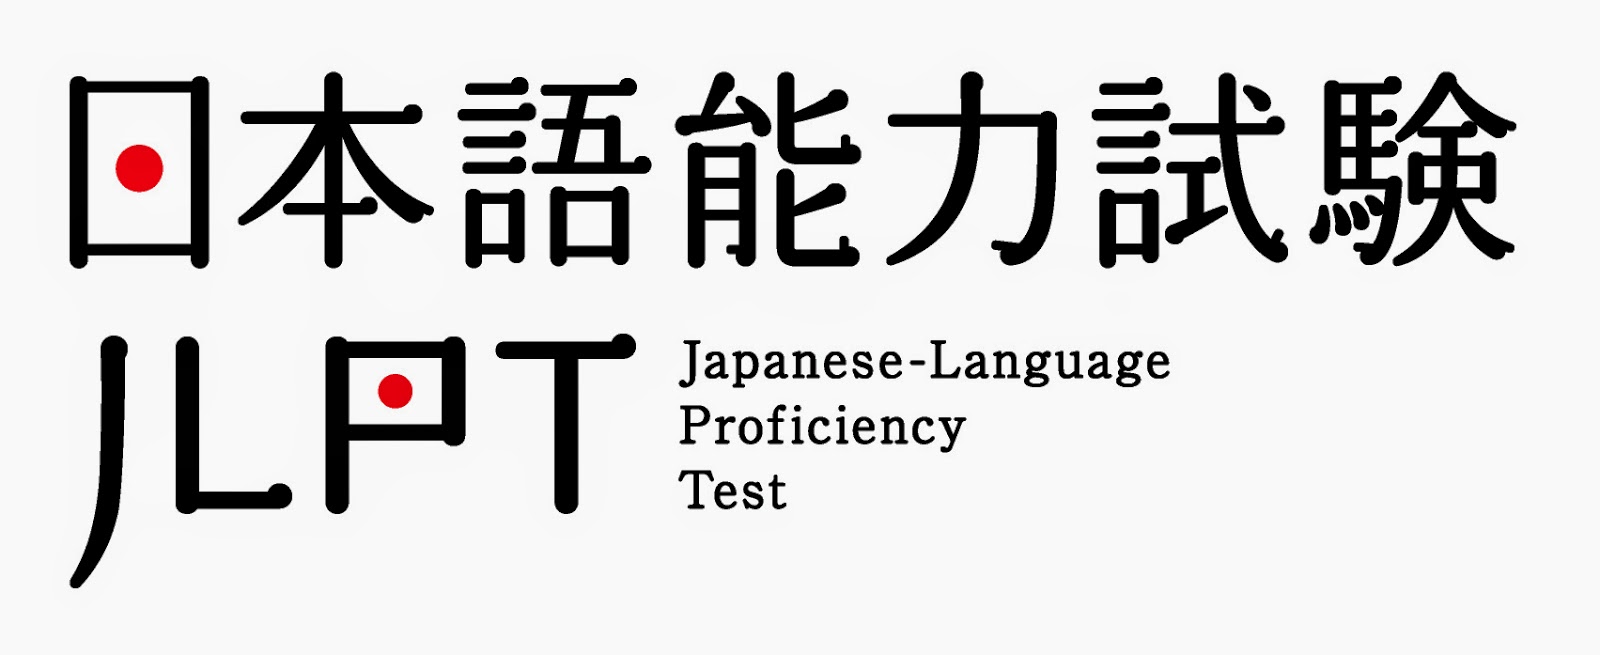 今天是JLPT日語能力測驗。